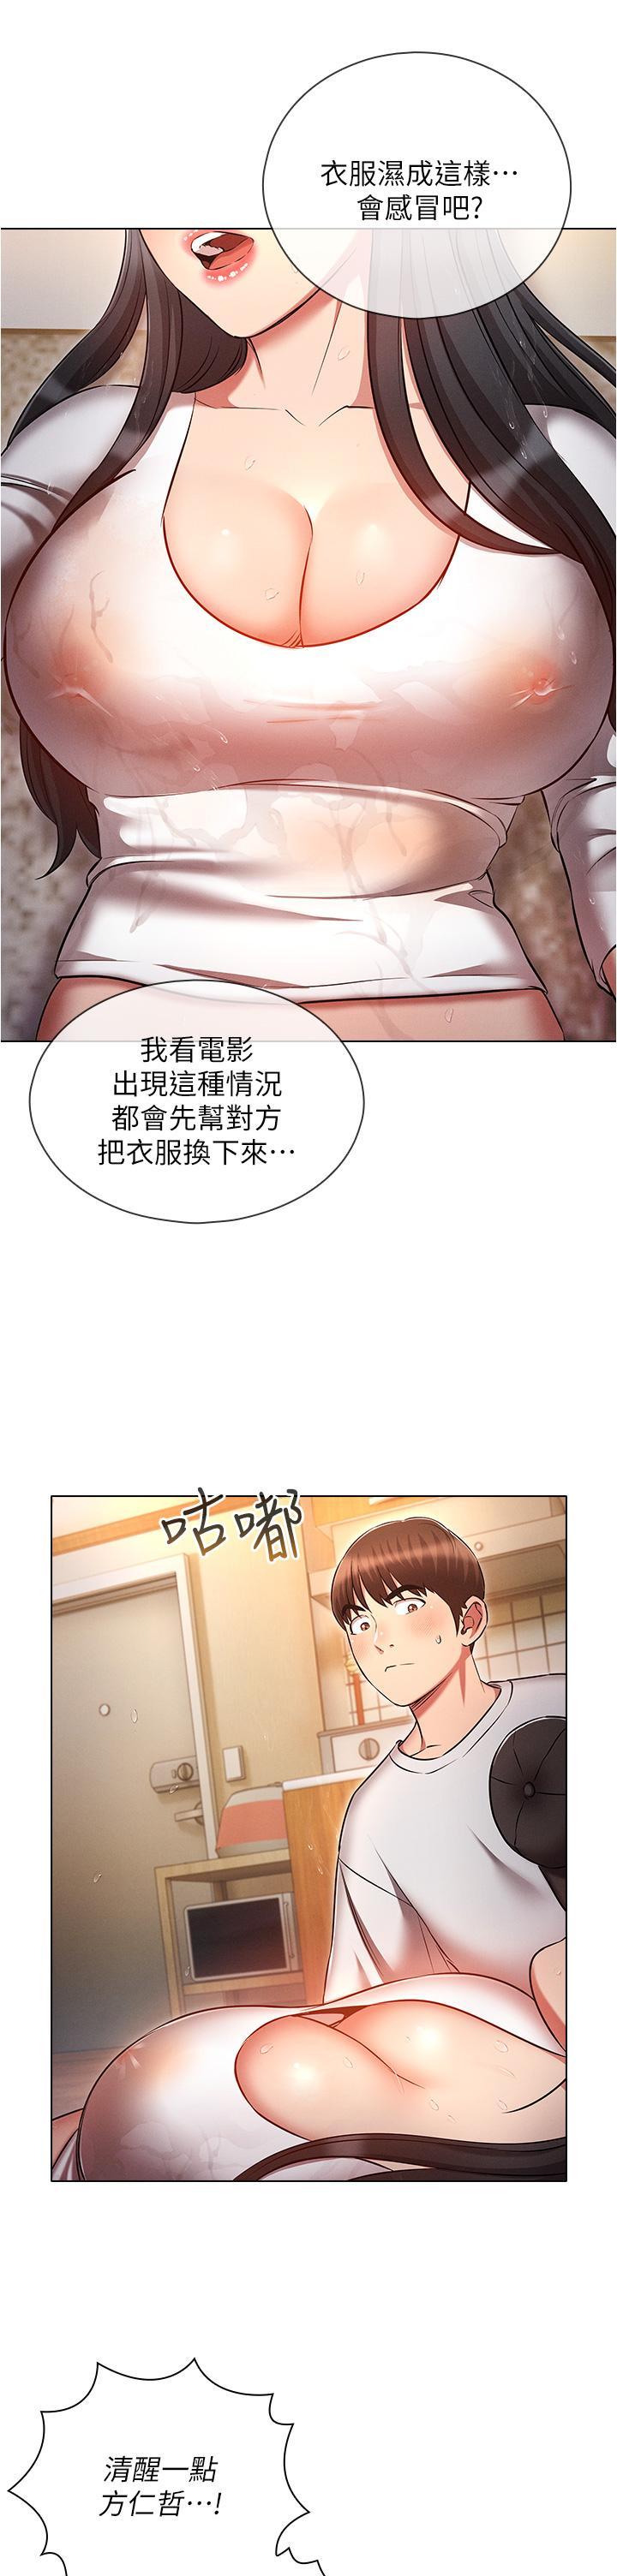 韩国污漫画 魯蛇的多重宇宙 第45话 我要被开苞了吗?! 8